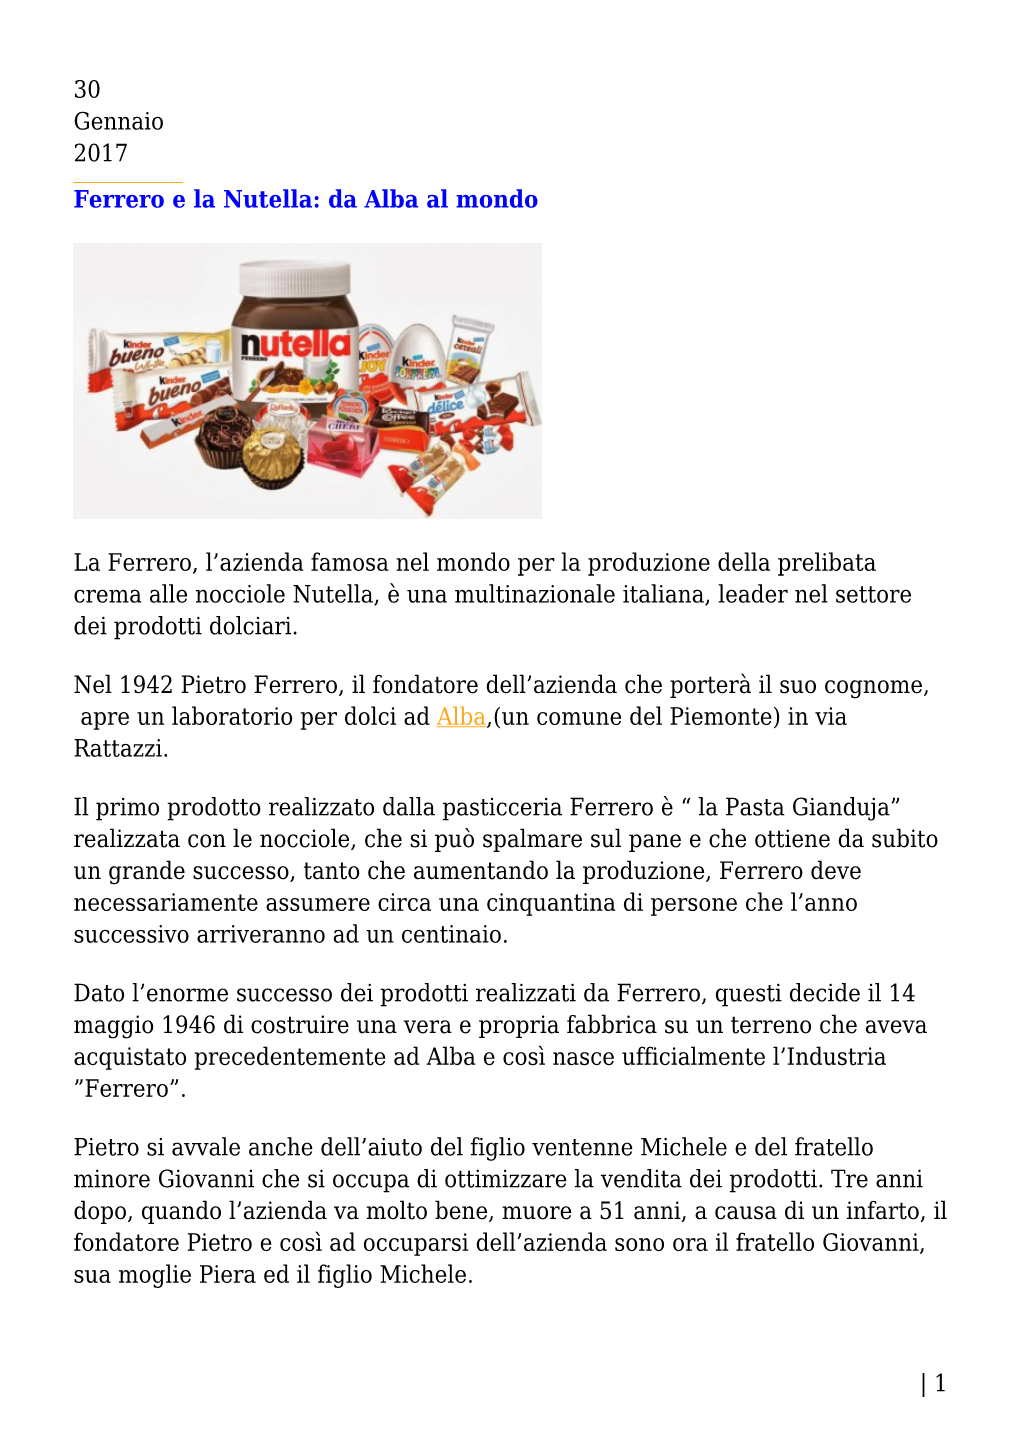 Ferrero E La Nutella: Da Alba Al Mondo